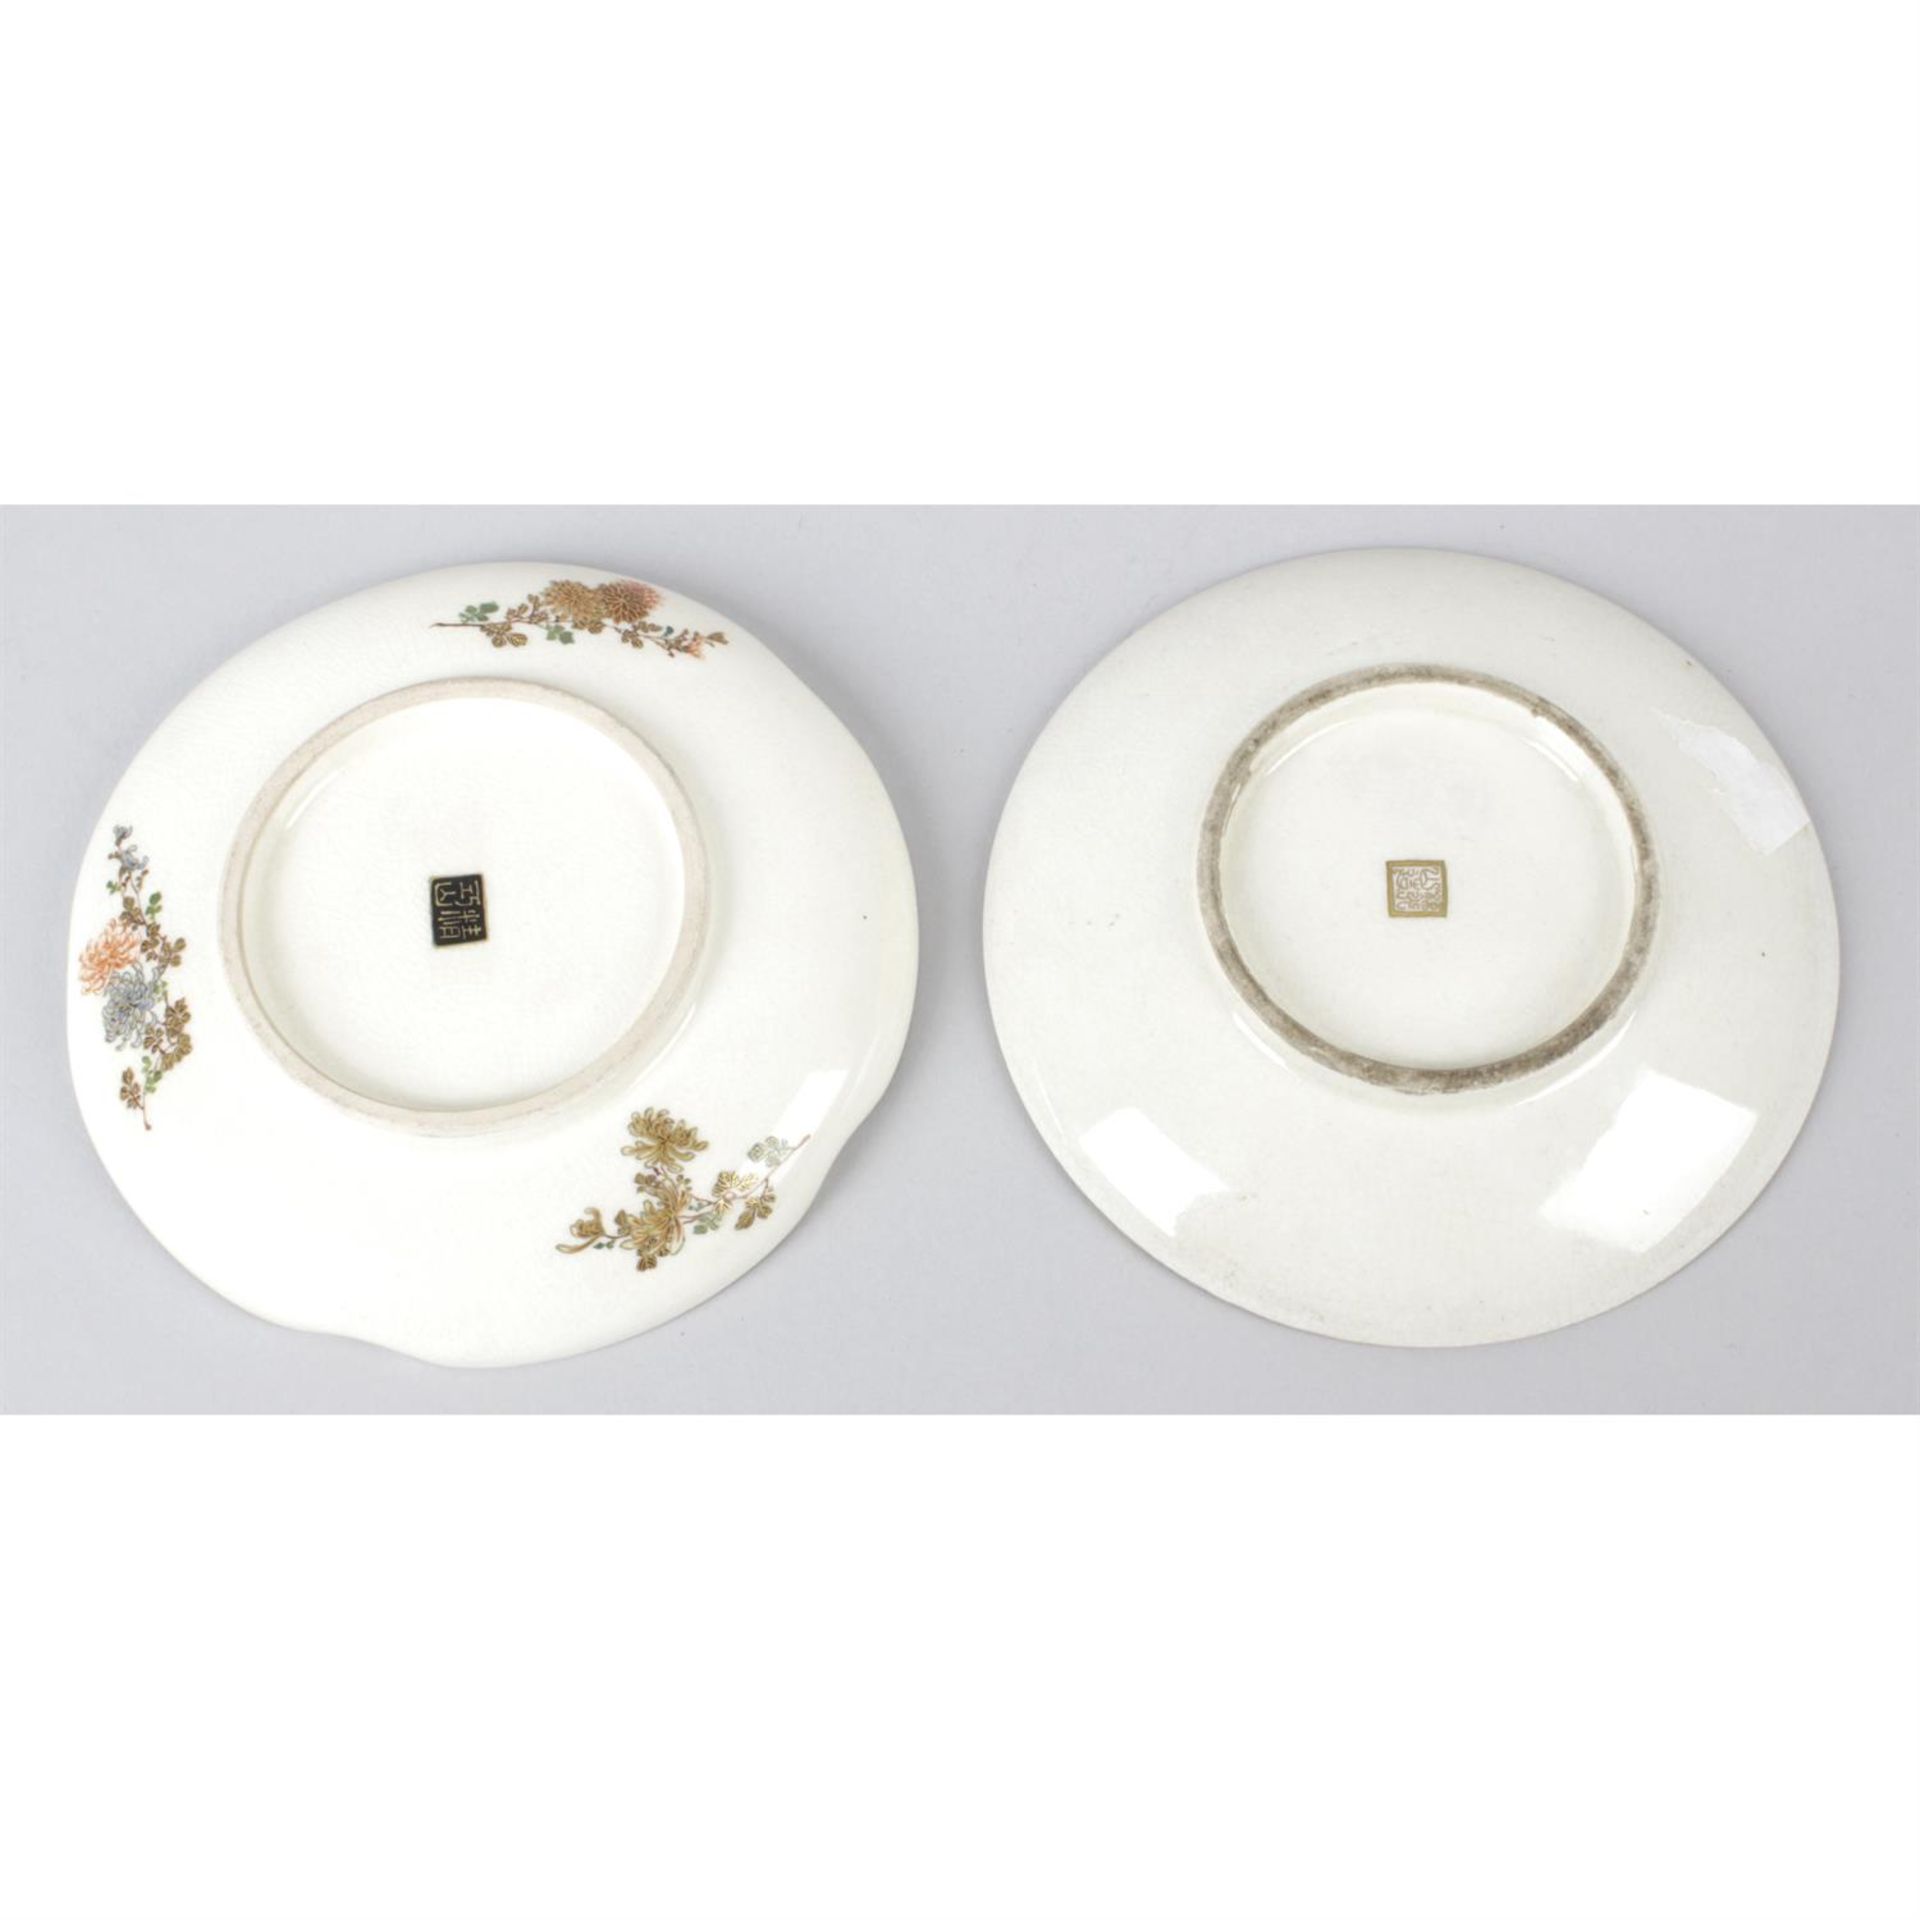 Two Japanese Satsuma dishes - Image 2 of 2